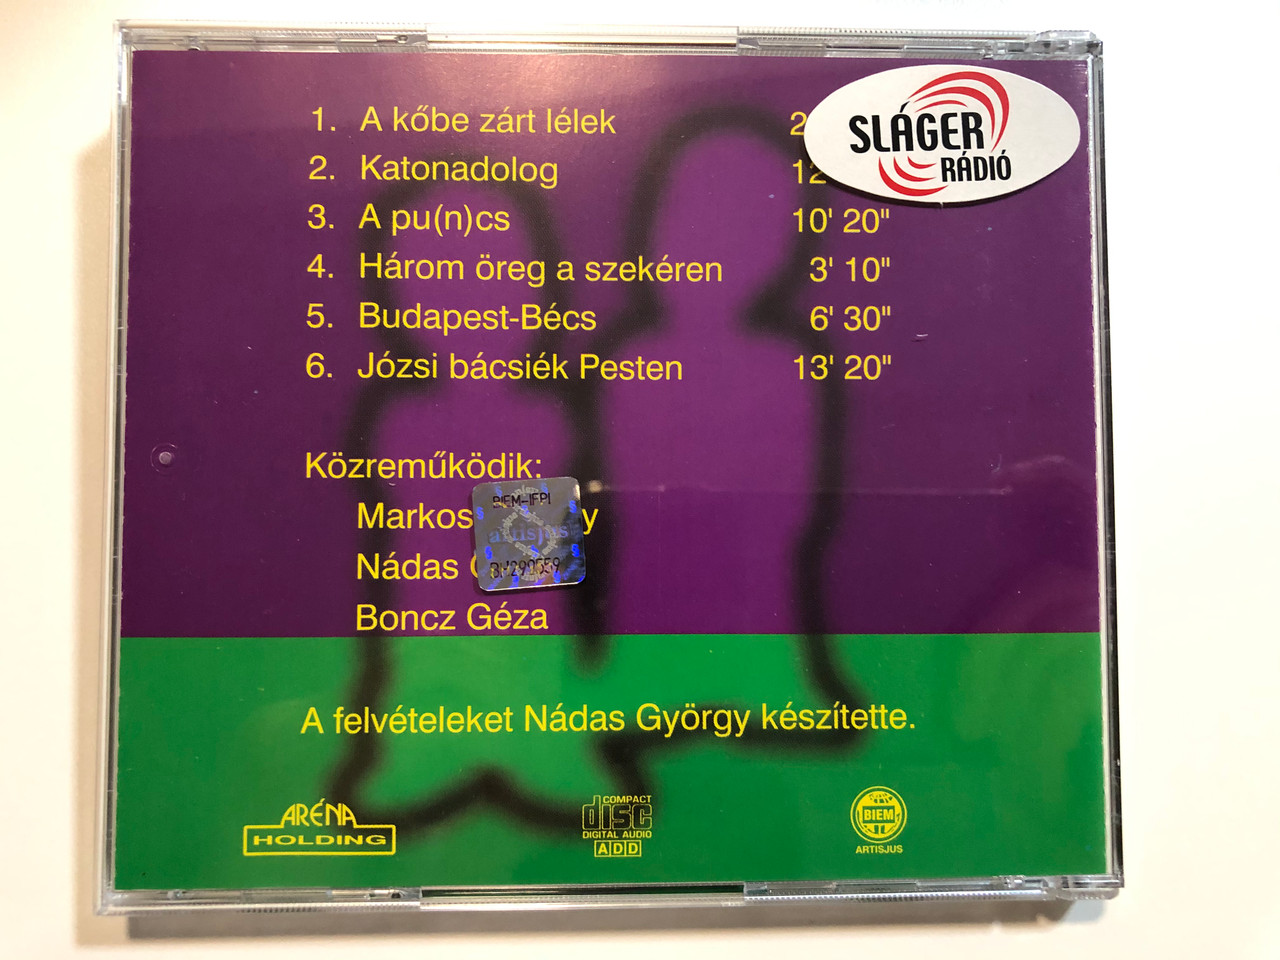 Best Of Markos-Nadas / Arena Holding Audio CD / ARCD 9799 -  bibleinmylanguage